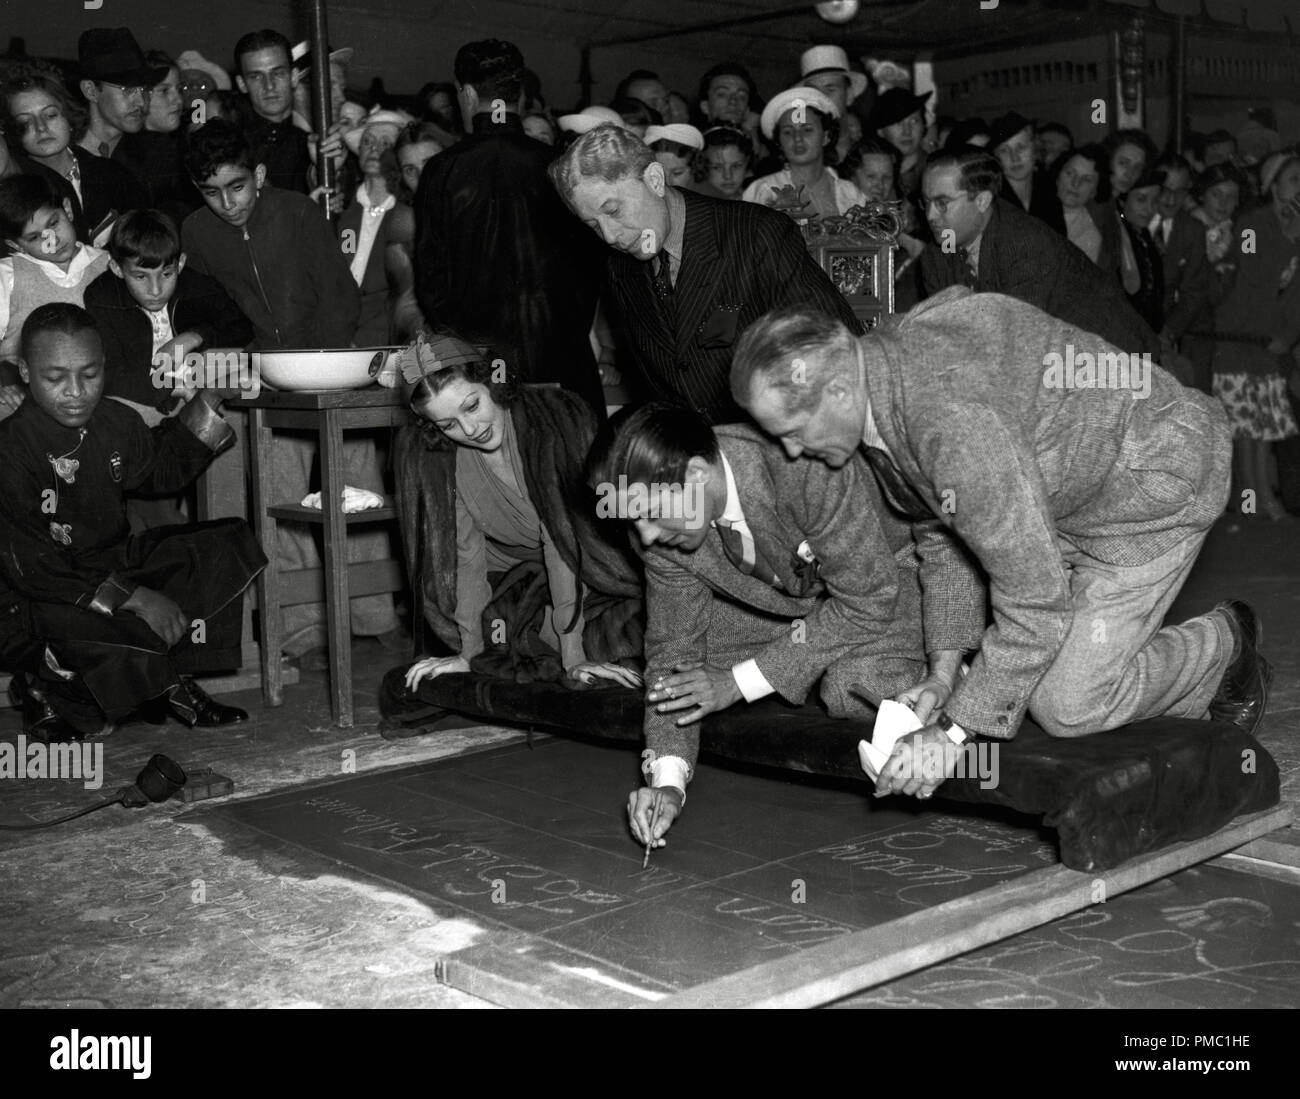 Tyrone Power, war gerade dreiundzwanzig, als er mit seiner Drucke in Zement am Grauman's Chinese Theater, geehrt. Er am 31. Mai 1937 ausgezeichnet wurde, in einer Zeremonie hielten gemeinsam für ihn und Loretta Young (links), Sid Grauman auch dargestellt hinter ihnen. Datei Referenz # 33595 501 THA Stockfoto